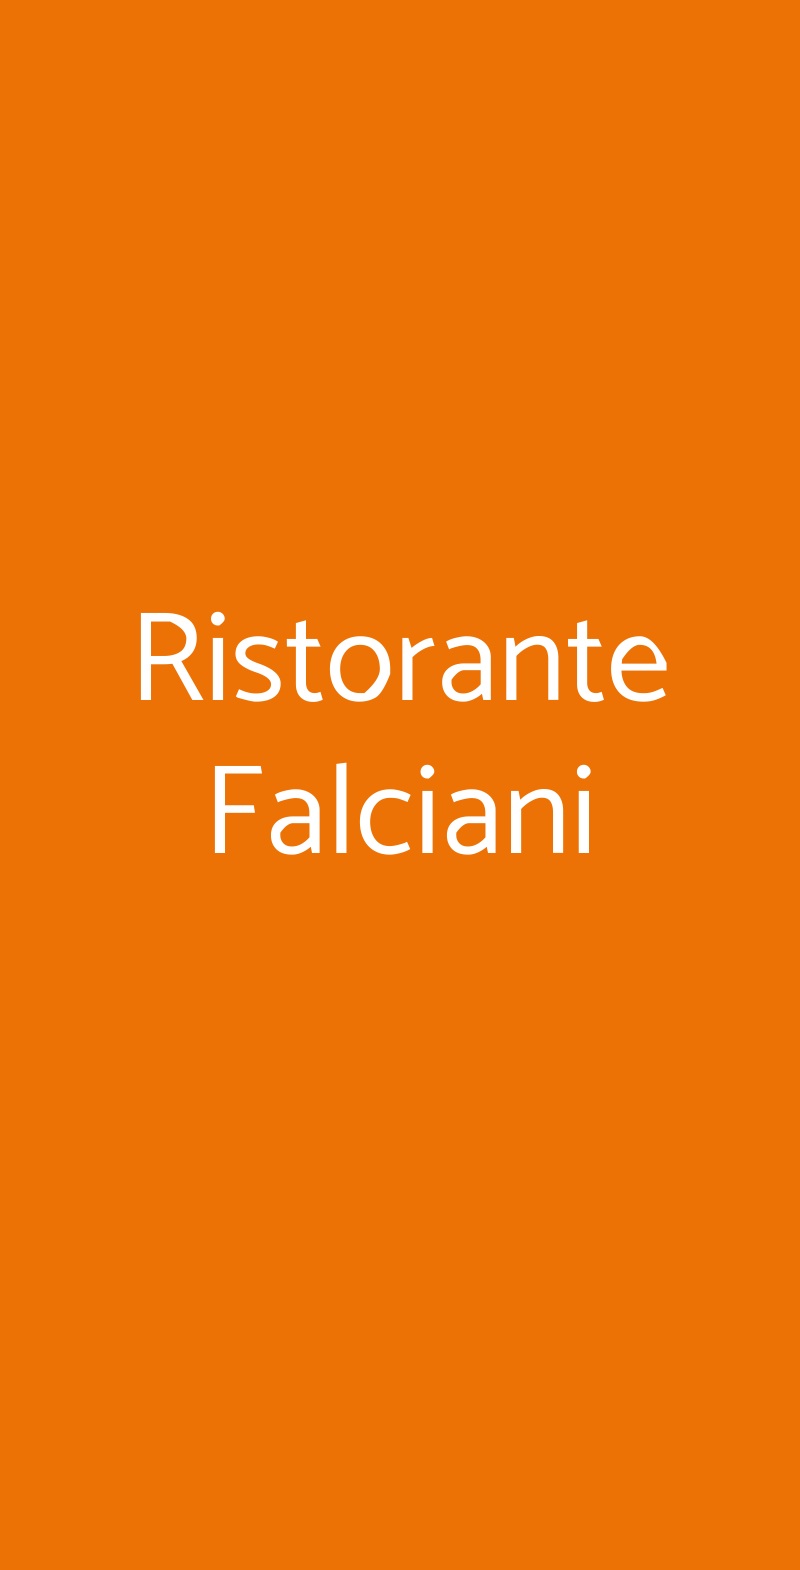 Ristorante Falciani Venezia menù 1 pagina